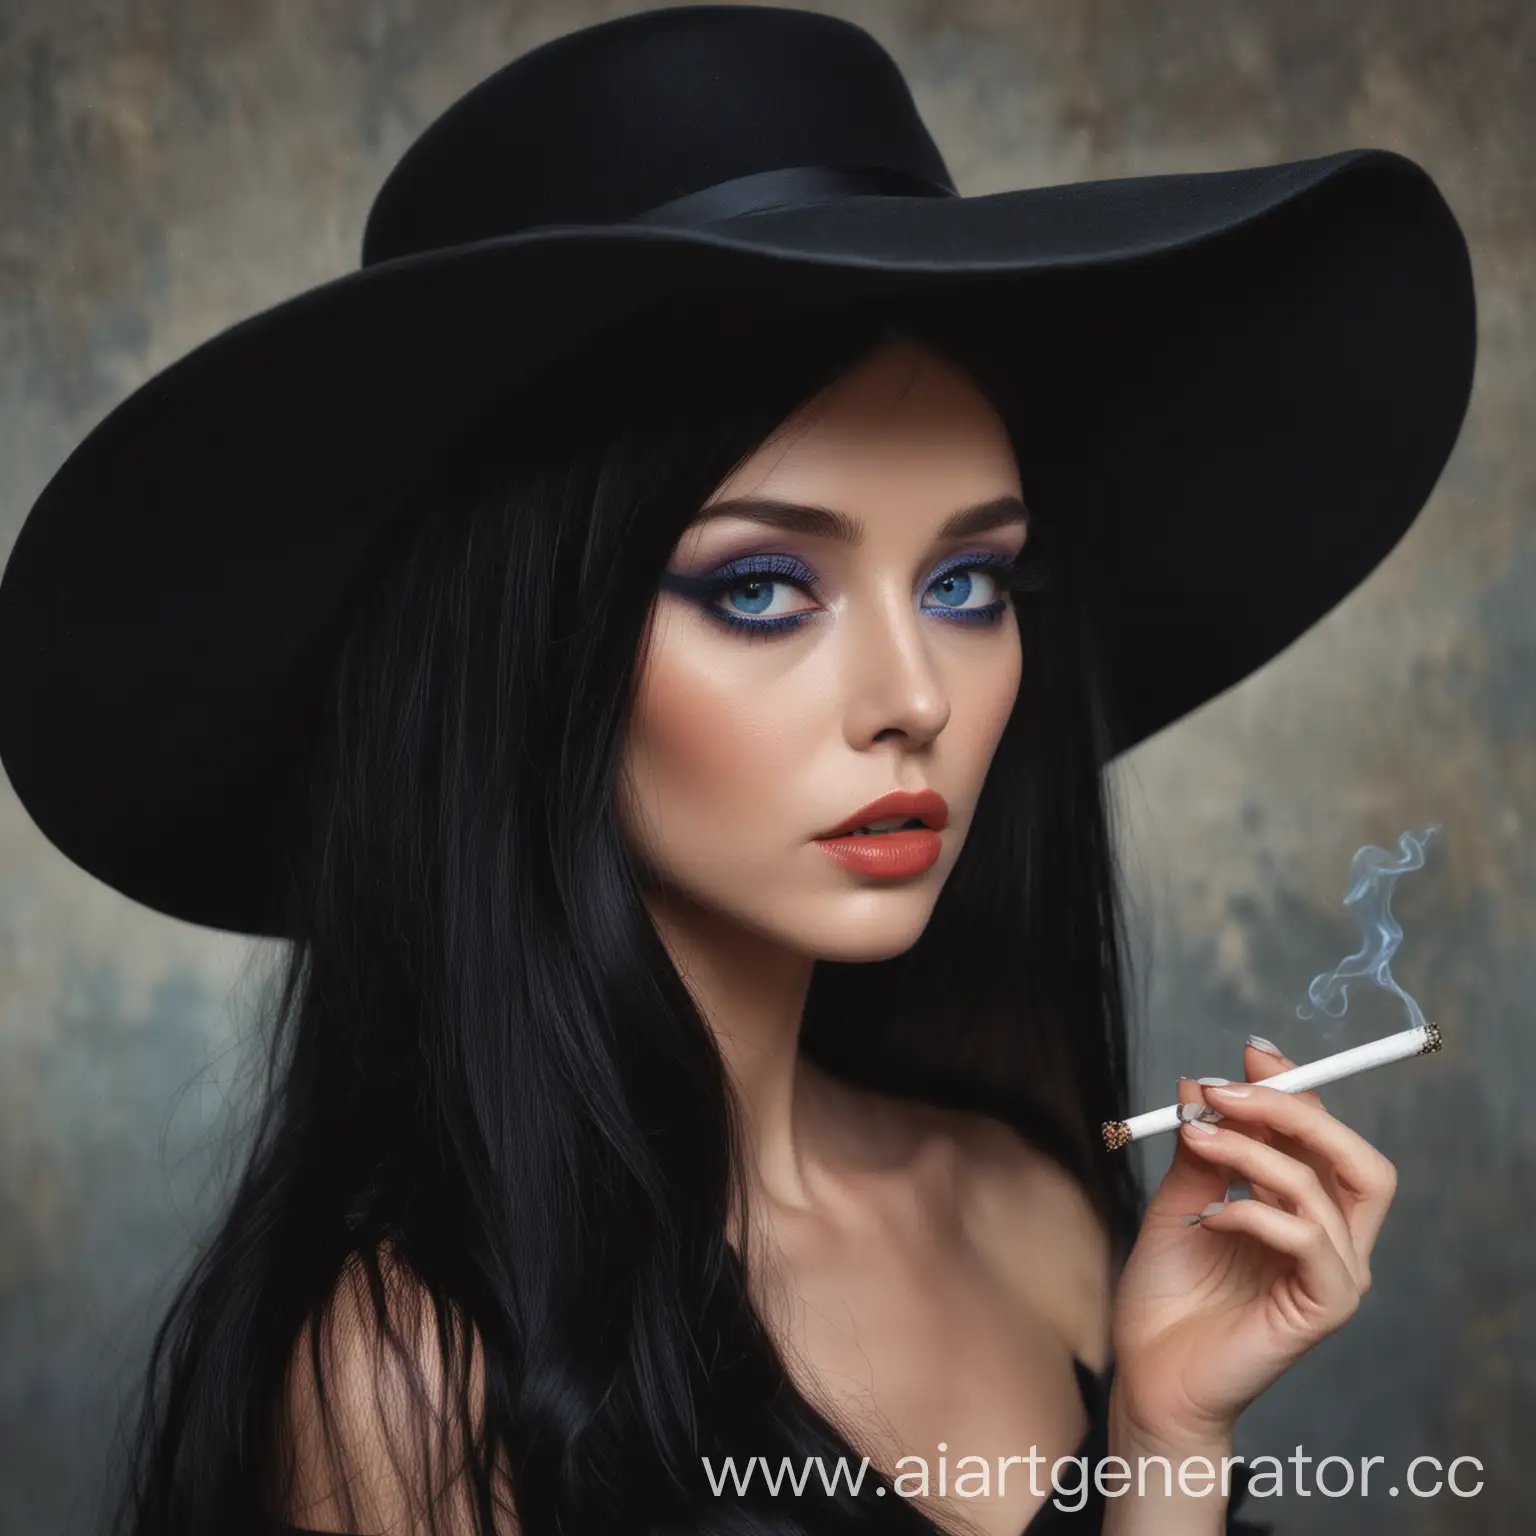 Женщина, в чёрном вечернем платье, с длинными чёрными волосами, яркими голубыми глазами, большой чёрной шляпой на голове, с сигаретой в зубах